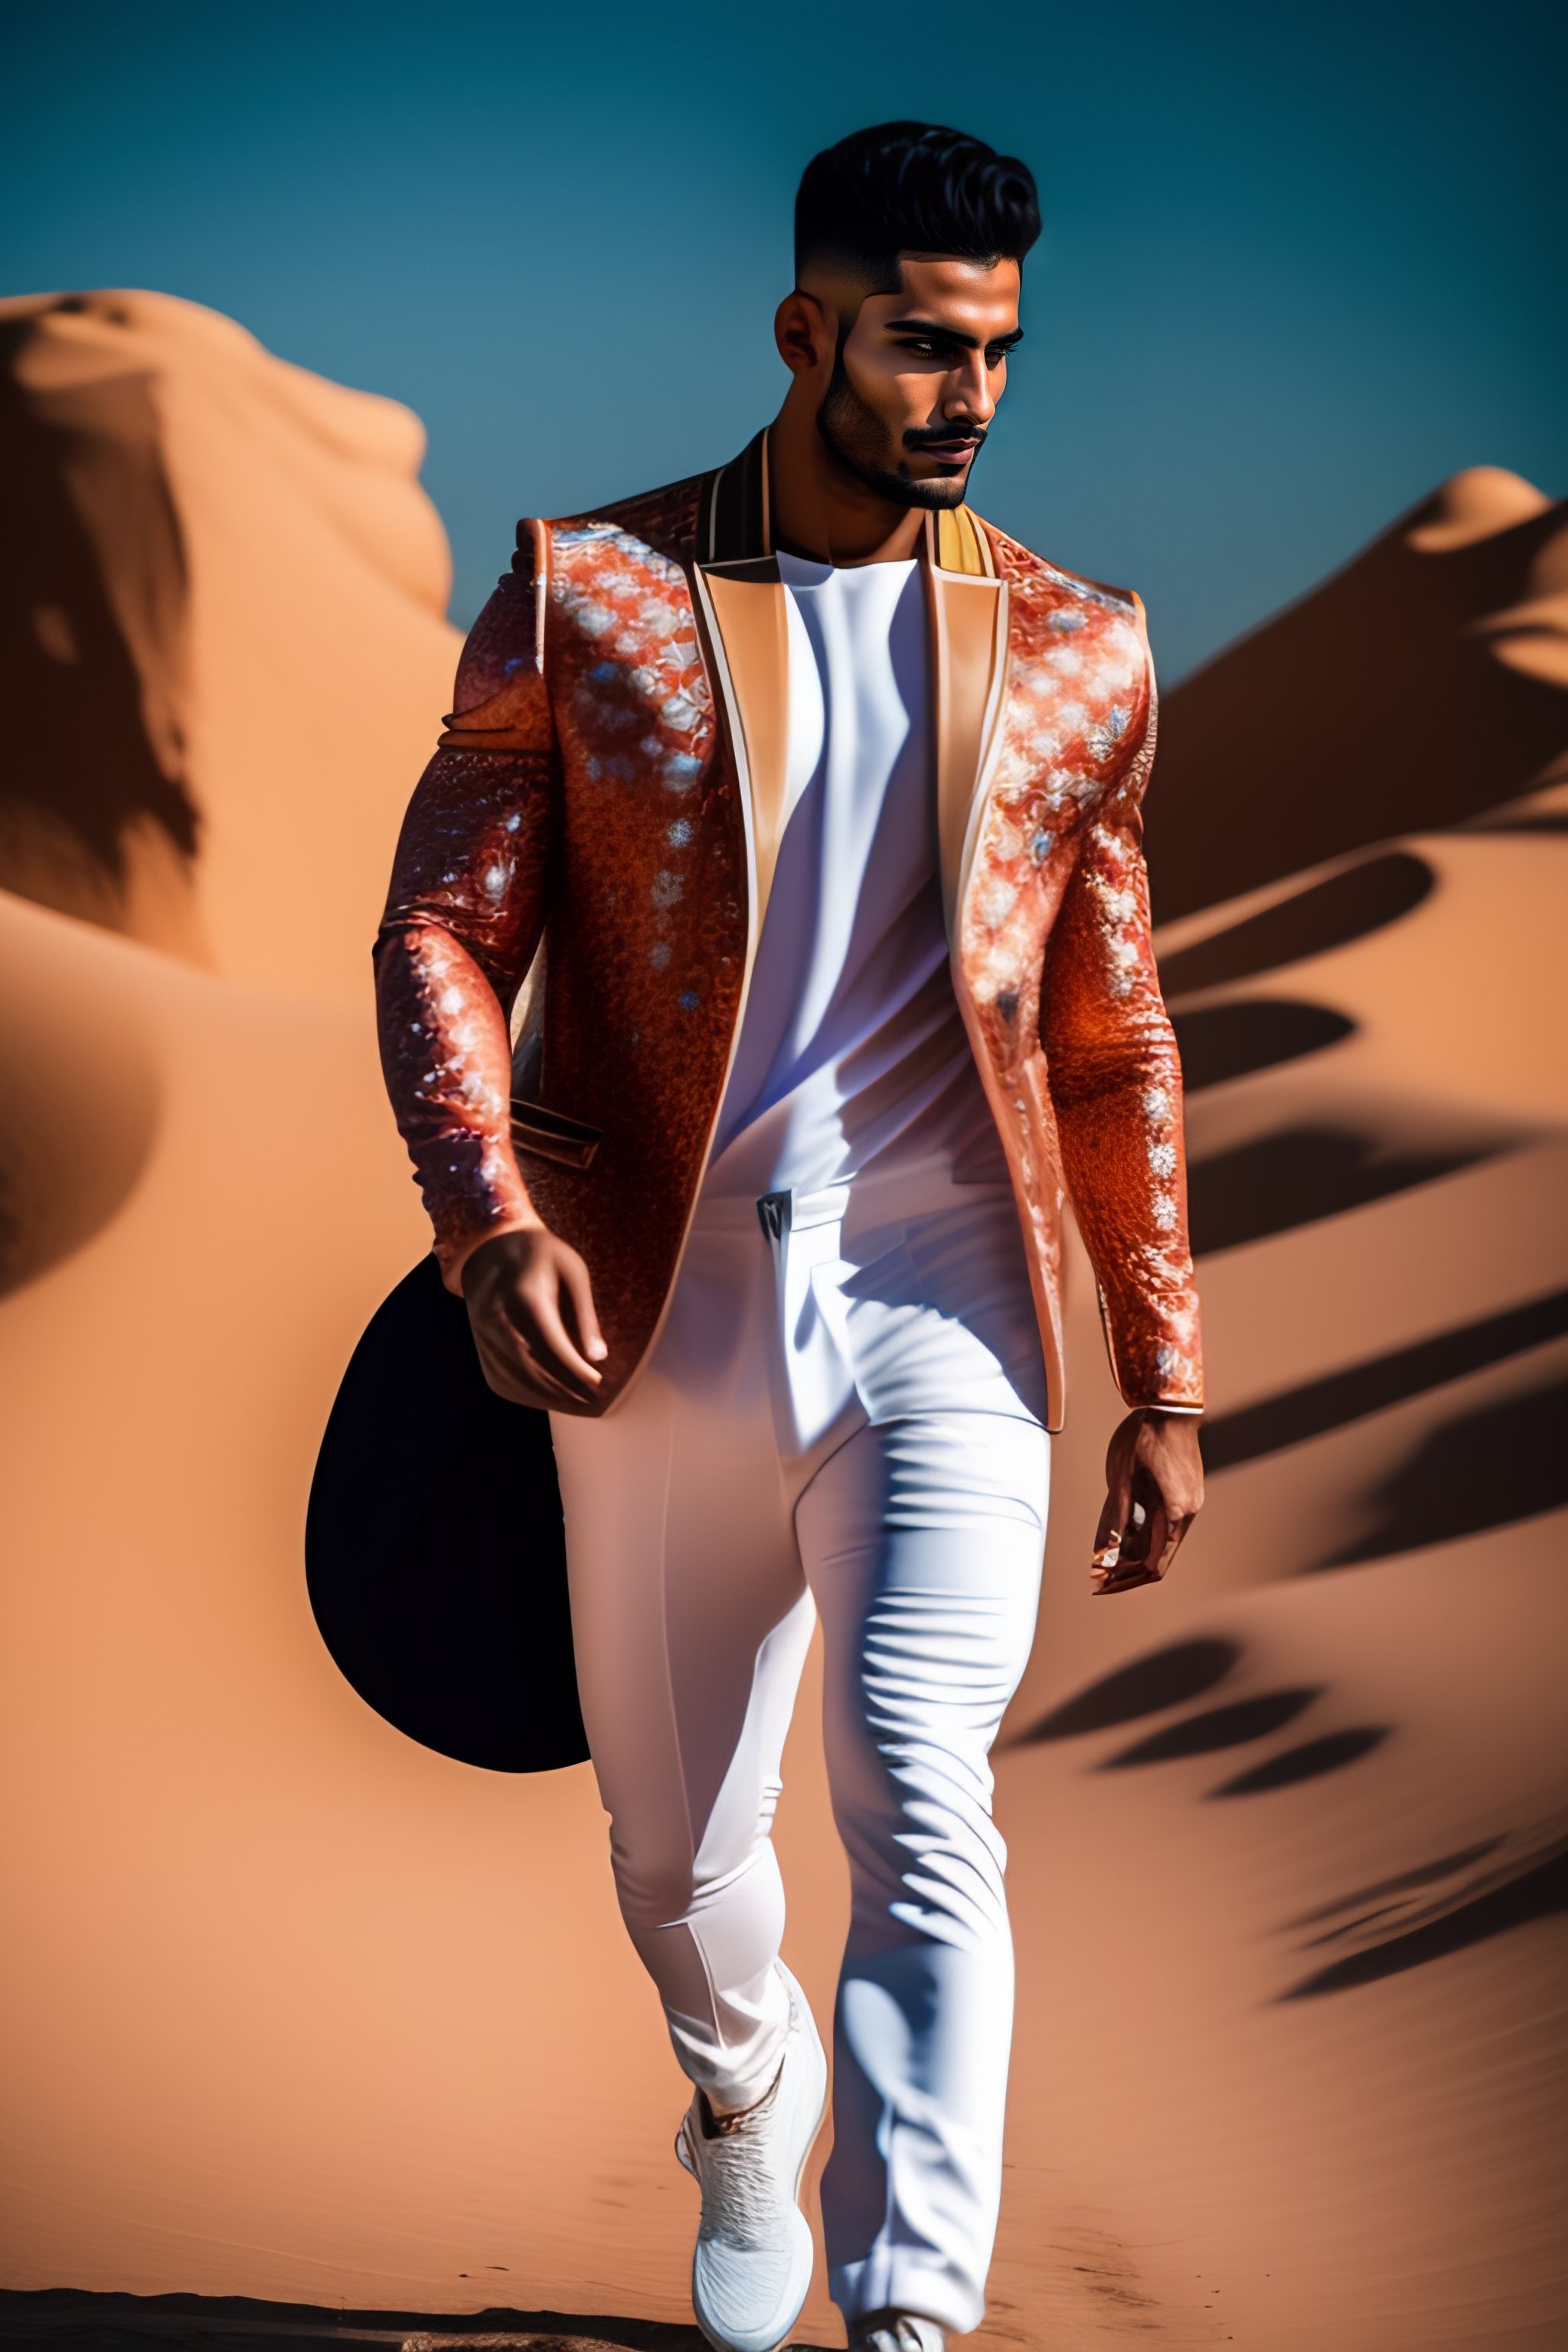 Lexica - Arab male model walking dow the catwalk, dark fashion